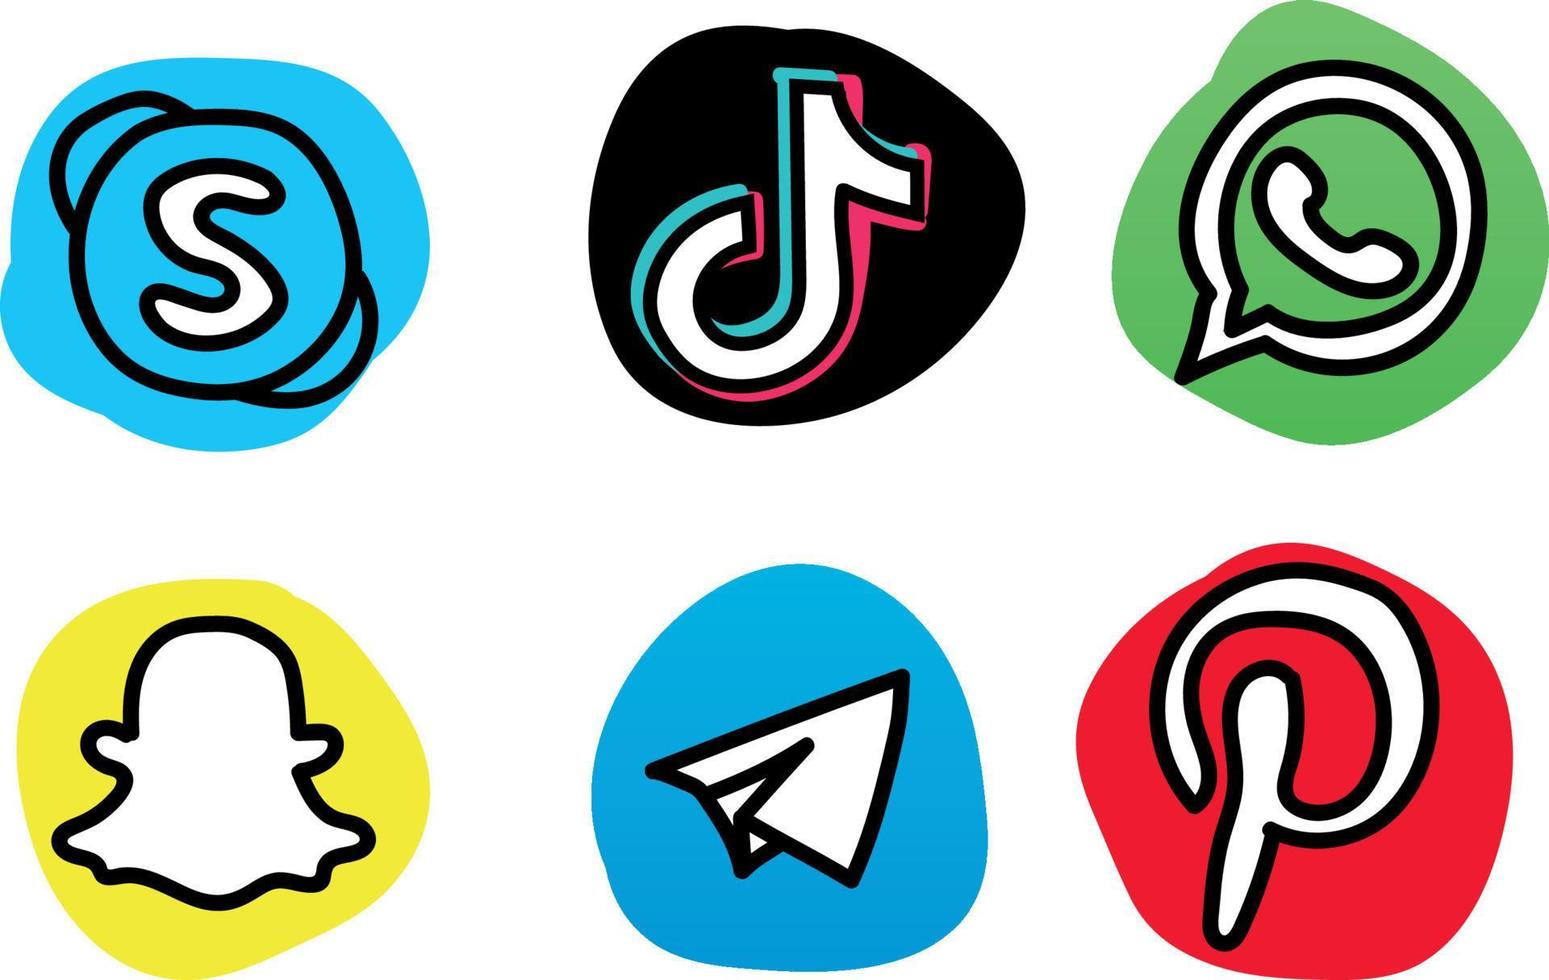 logos de médias sociaux dessinés à la main vecteur